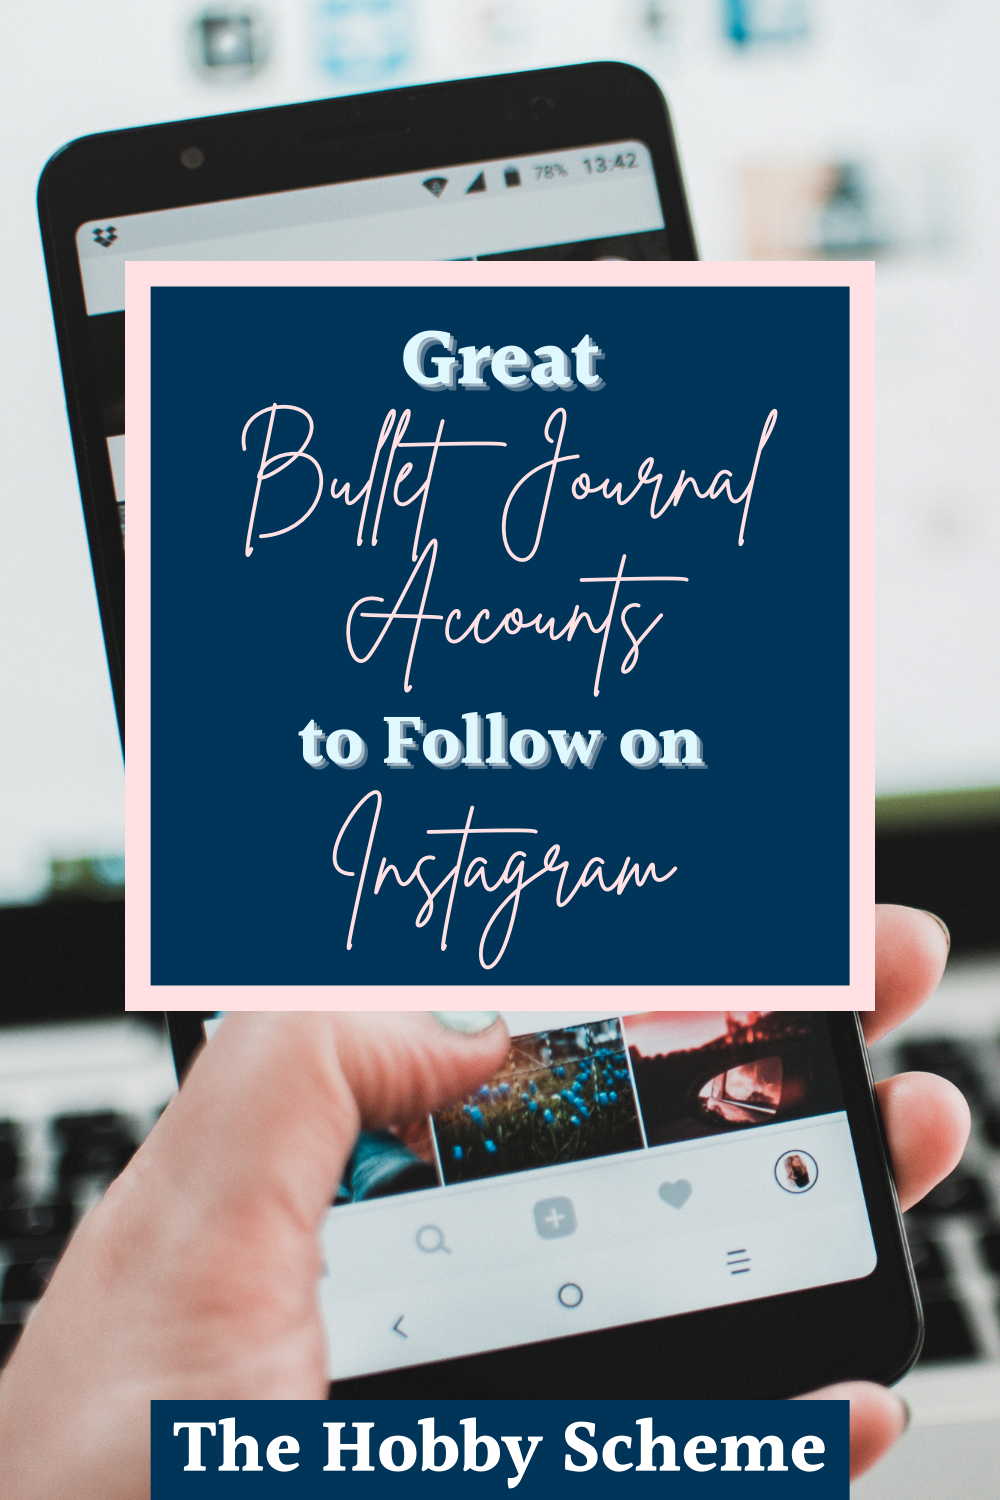 bullet journal Instagram accounts